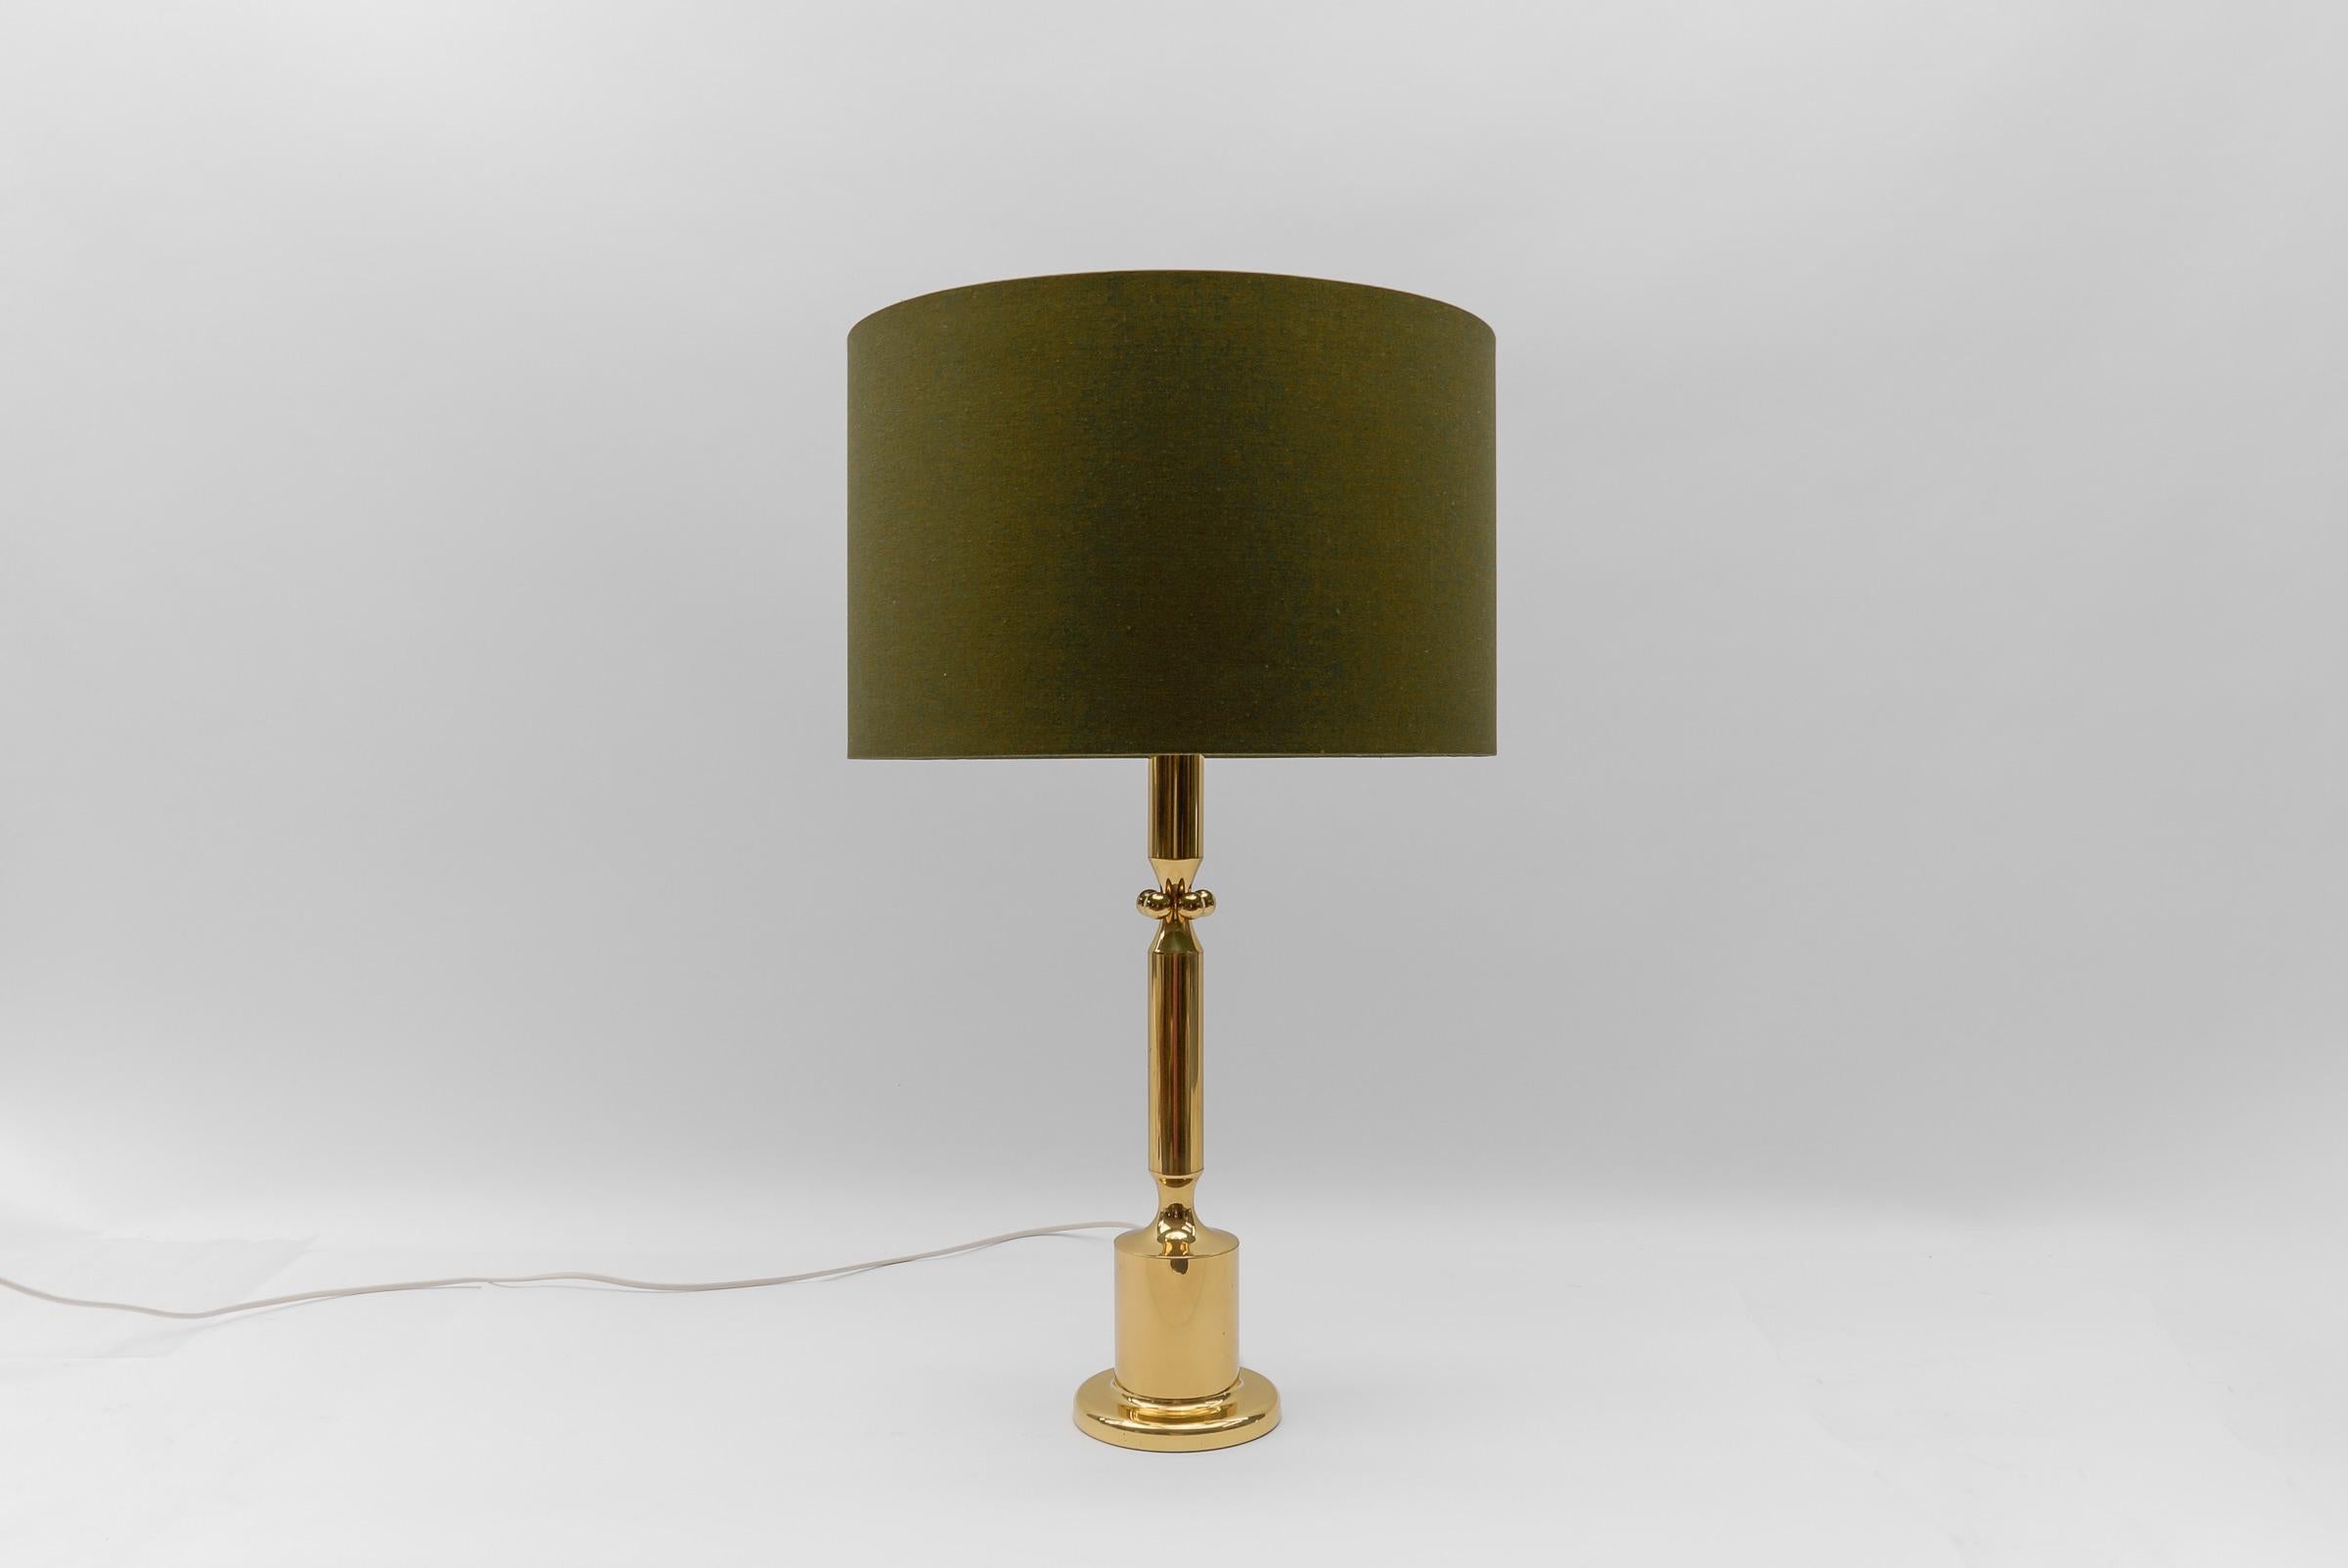 Mid Century Modern Gold Tischlampe Basis, 1960er Deutschland

Der Lampenschirm soll veranschaulichen, wie der Lampenfuß mit einem Schirm aussieht. Der Schirm hat einen Durchmesser von 45 cm (17.71 in.) und eine Höhe von 29 cm (11.41 in.).

Eine